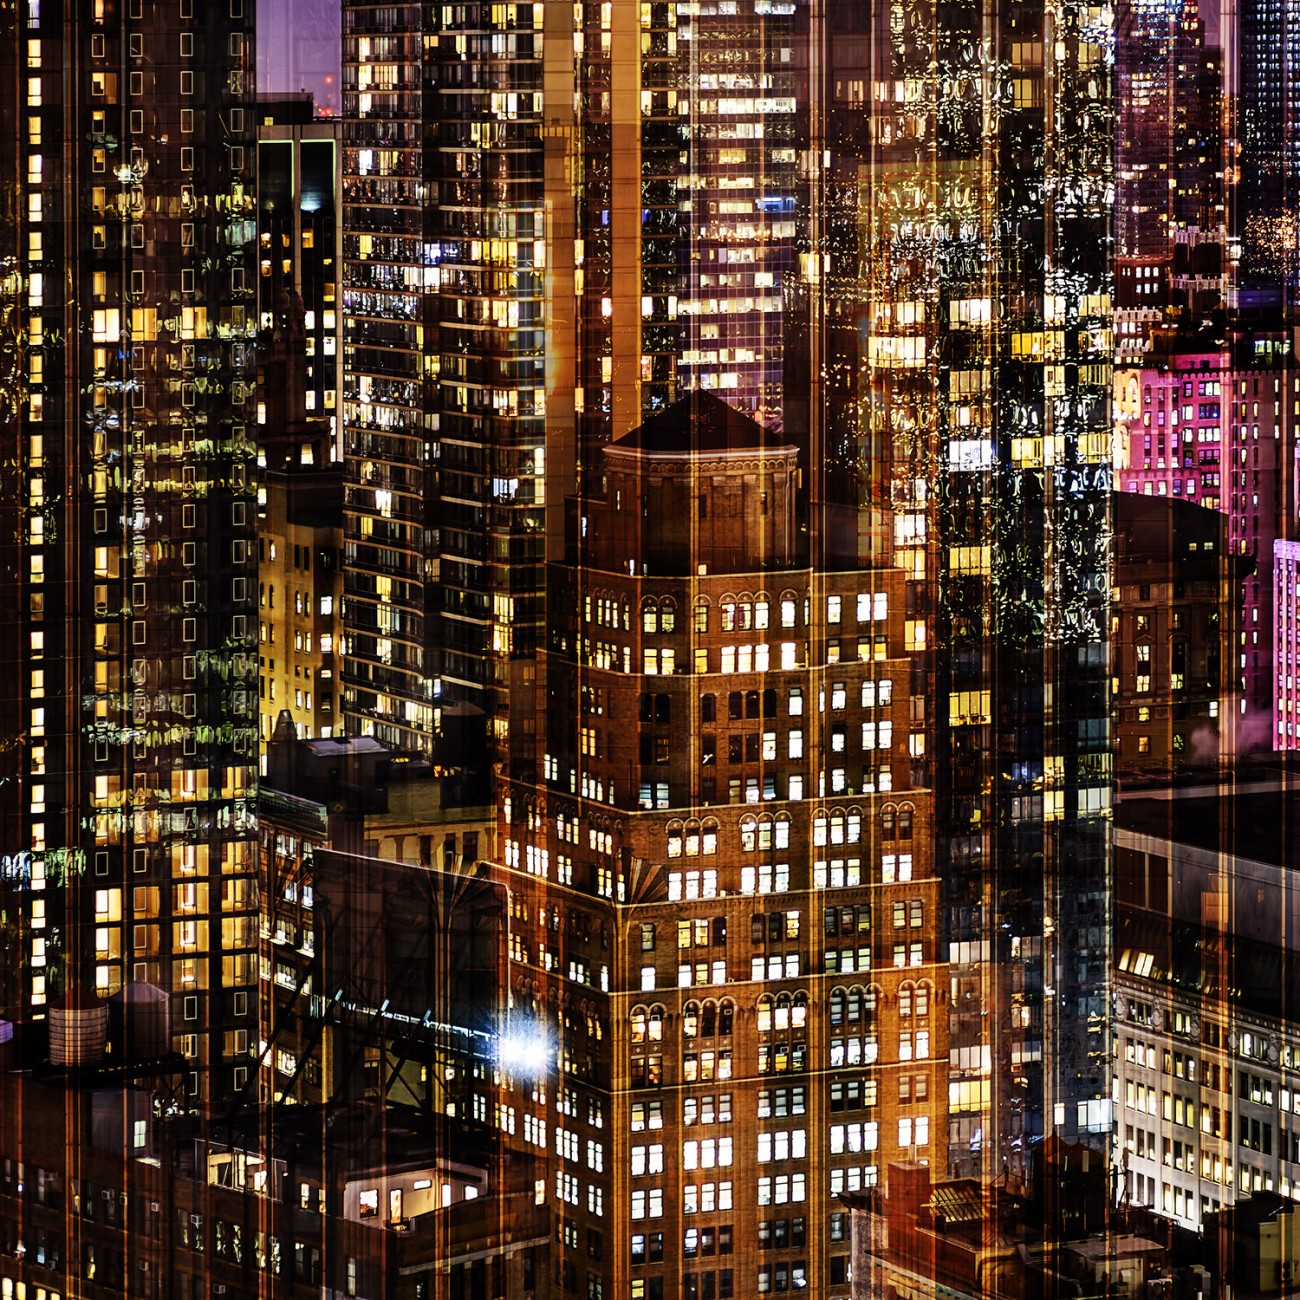 Metropolis - Day into night, NY, 2016